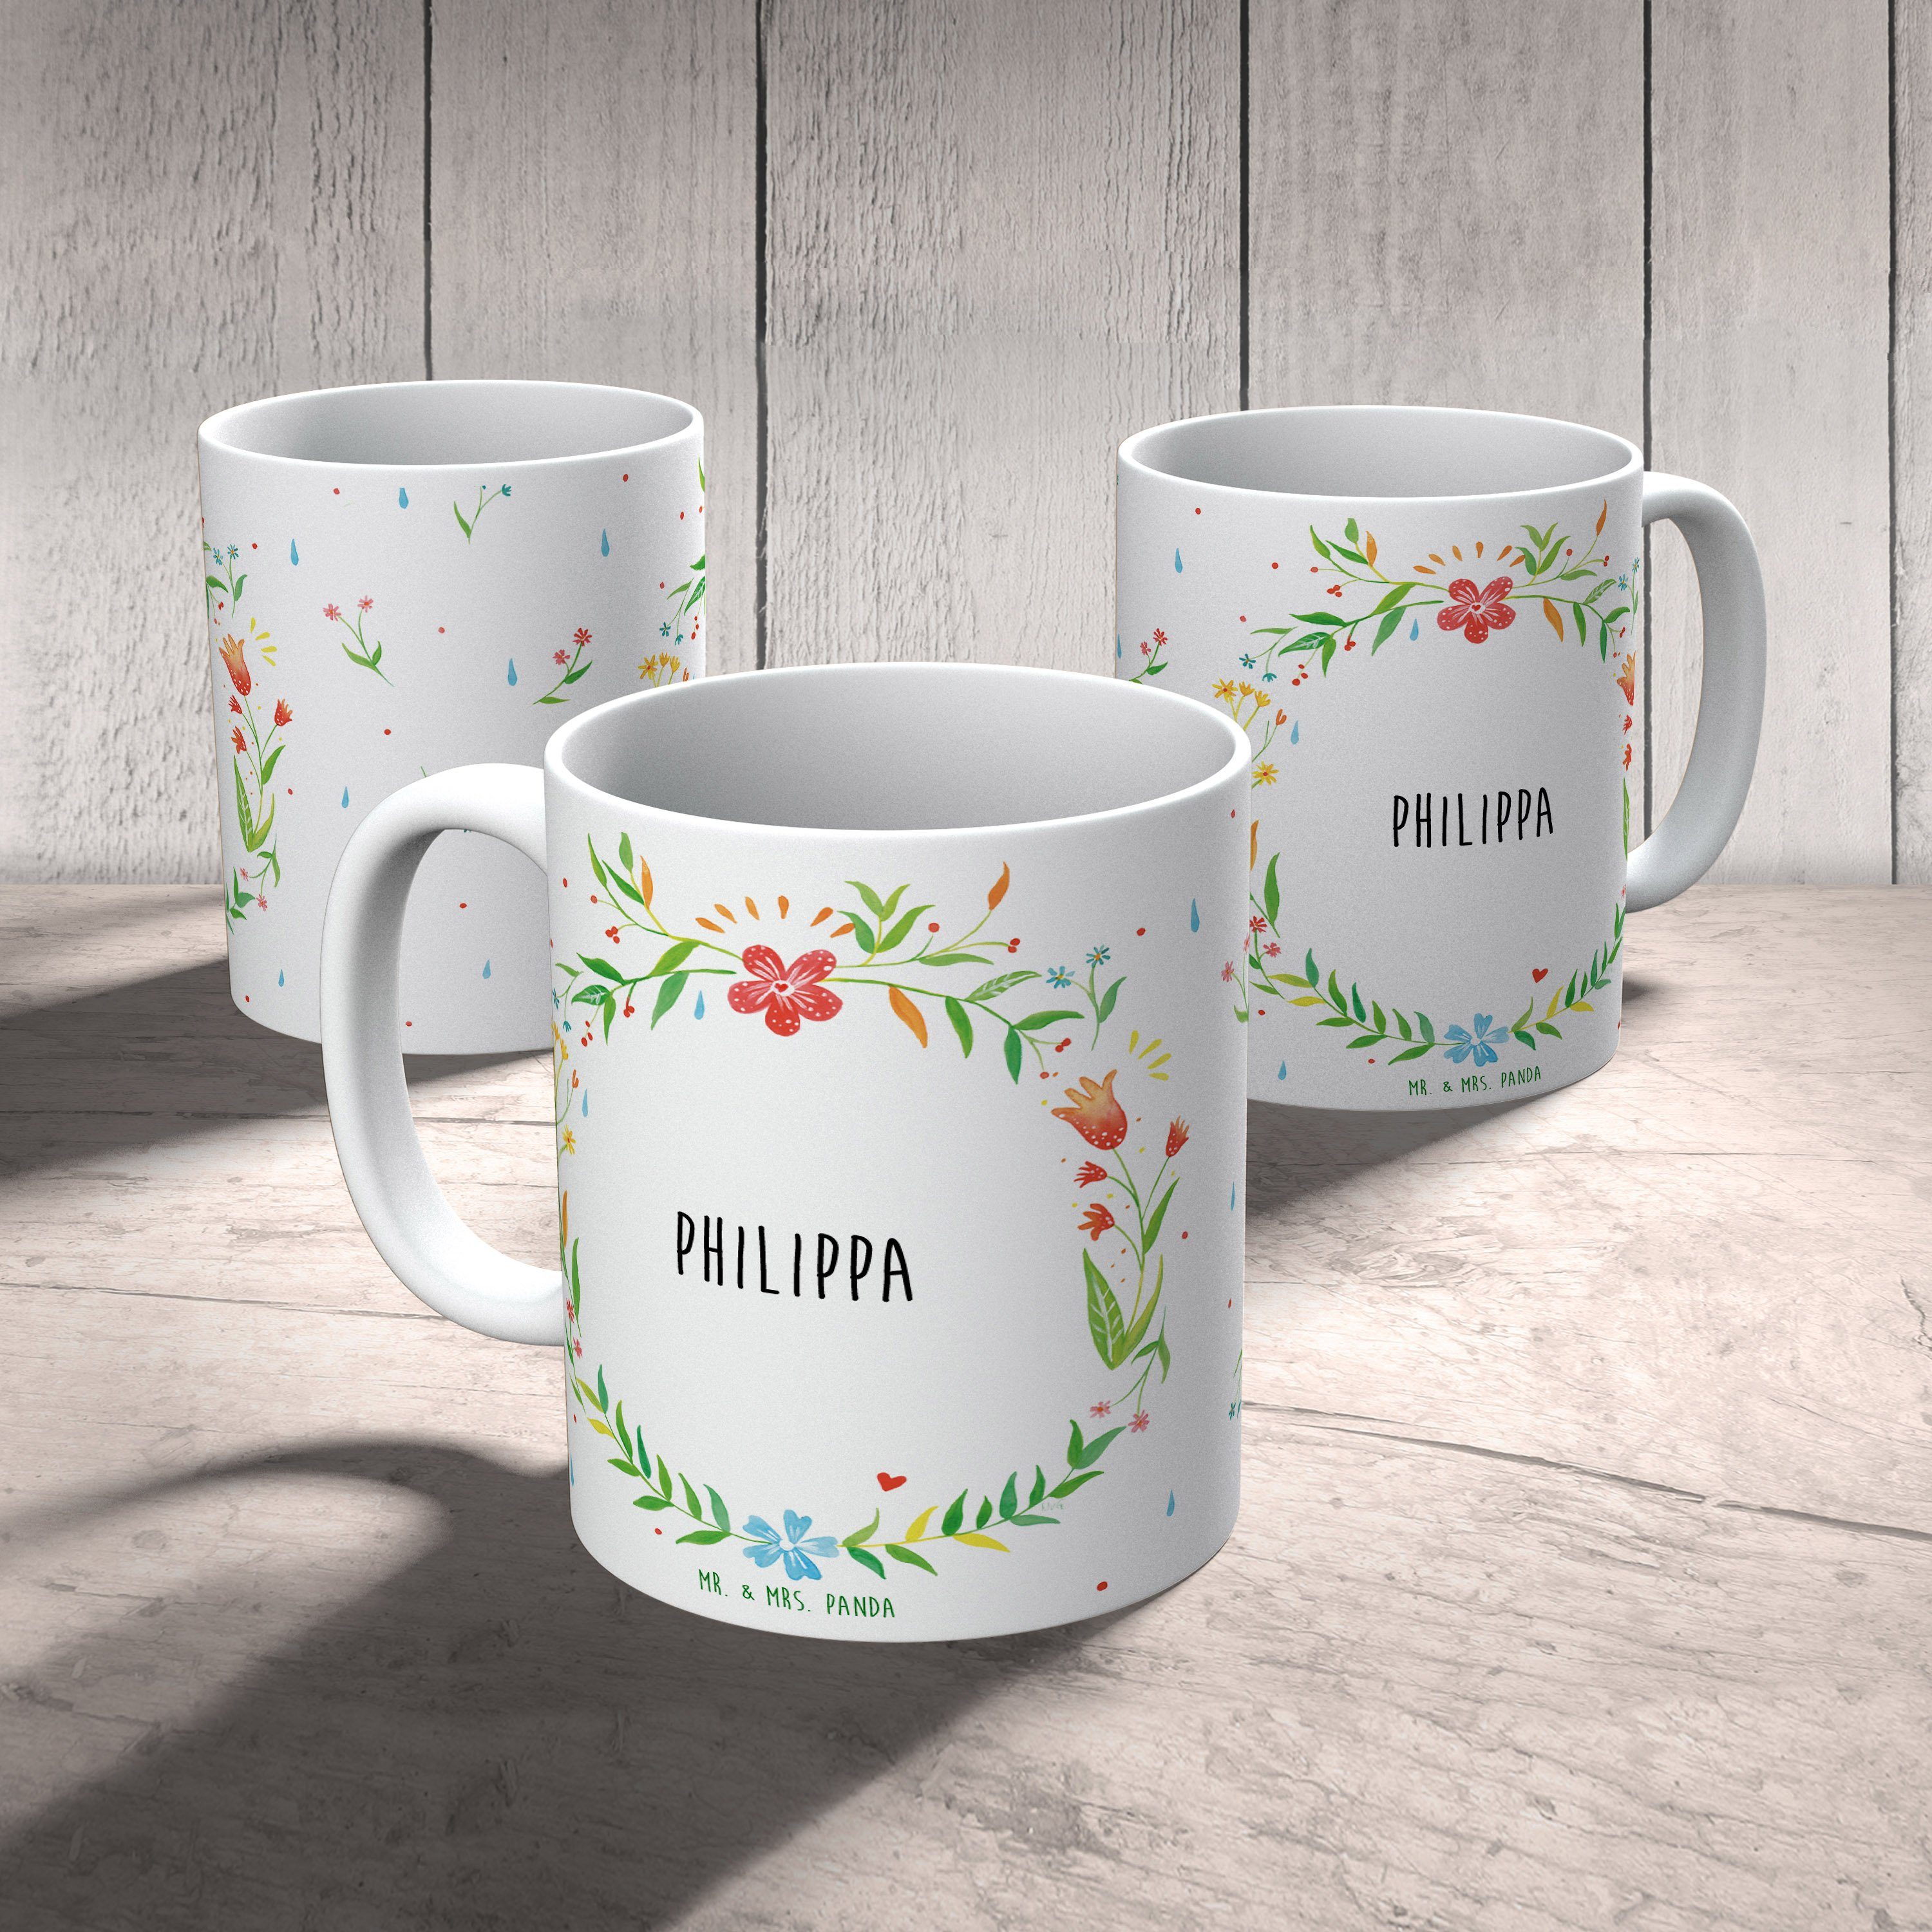 Mr. & Mrs. Panda Keramik - Geschenk, Porzellantass, Tasse Kaffeebecher, Teetasse, Teebecher, Philippa